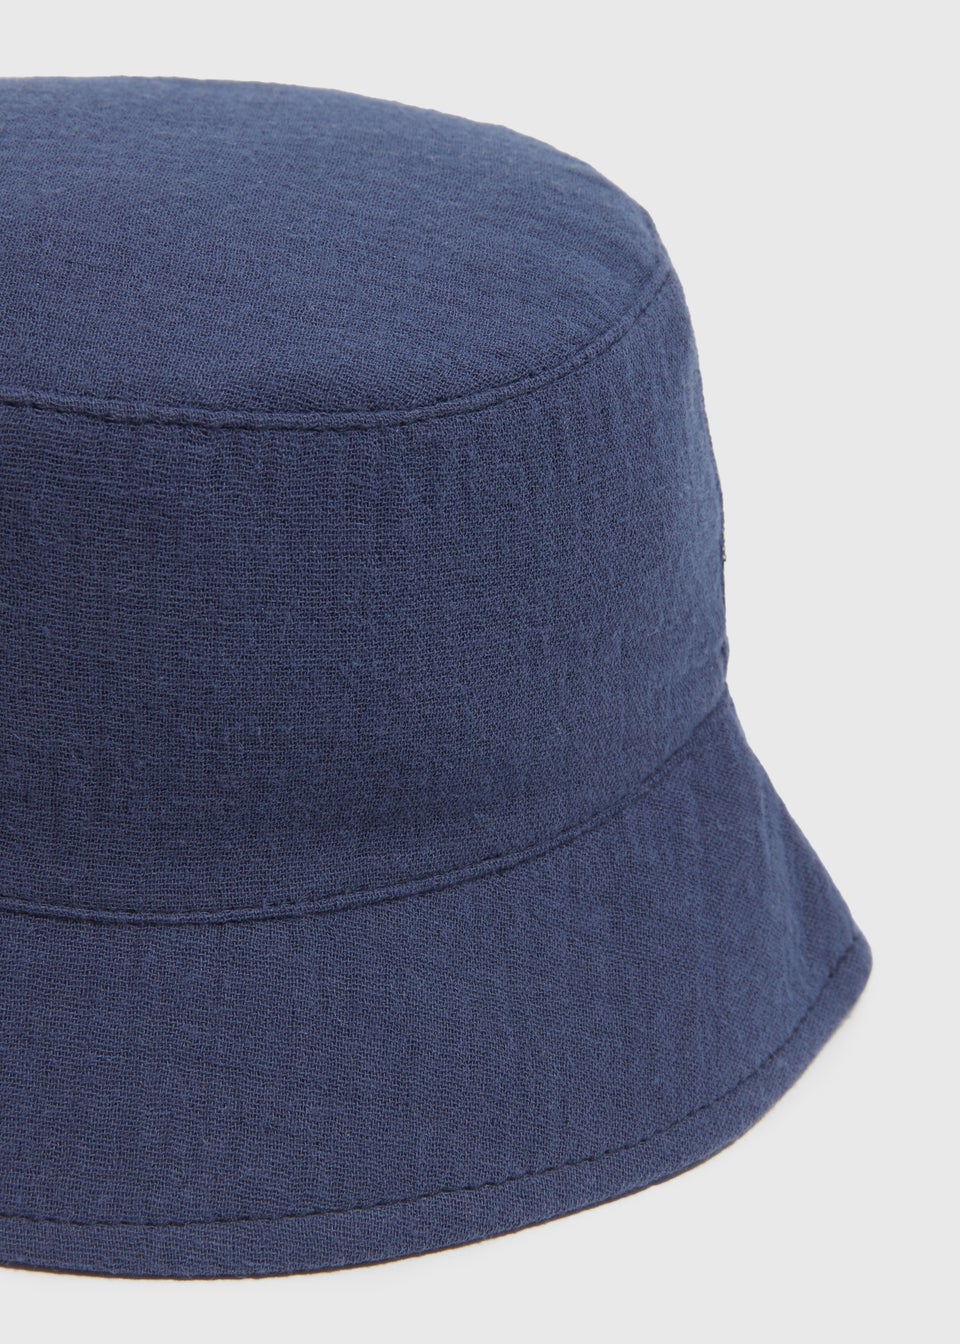 Baby Navy Crinkle Bucket Hat (Newborn-24mths)